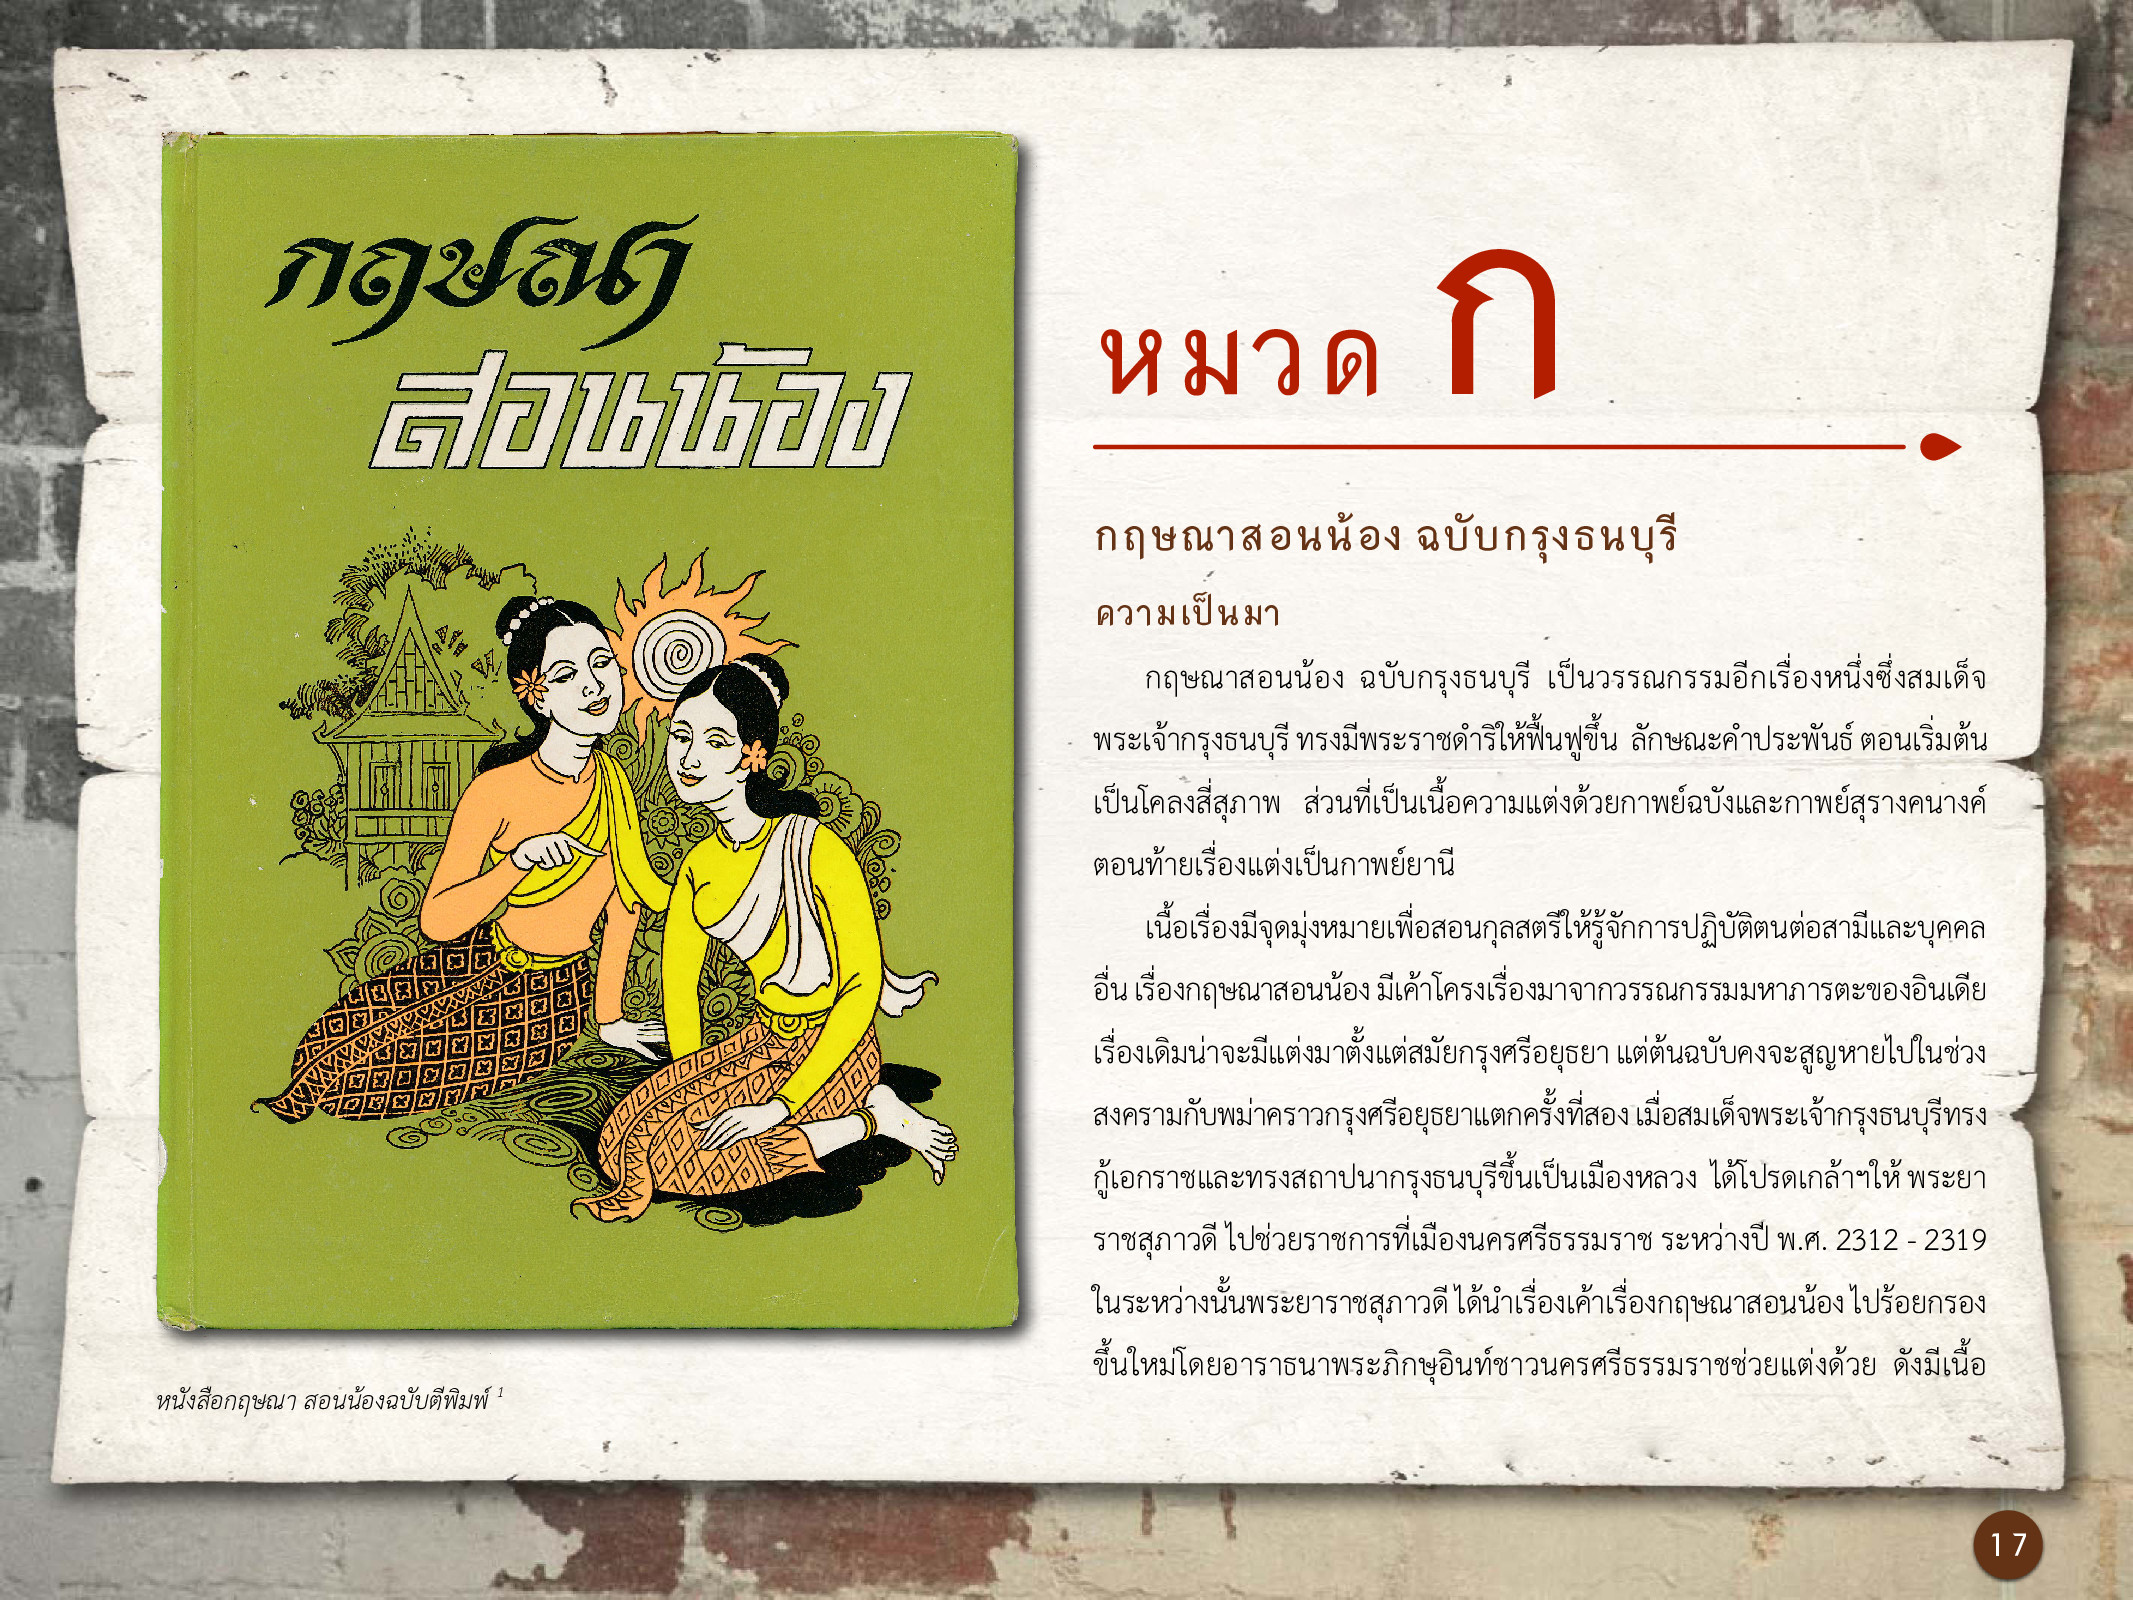 ศิลปกรรมกรุงธนบุรี ./images/encyclopedia/17.jpg